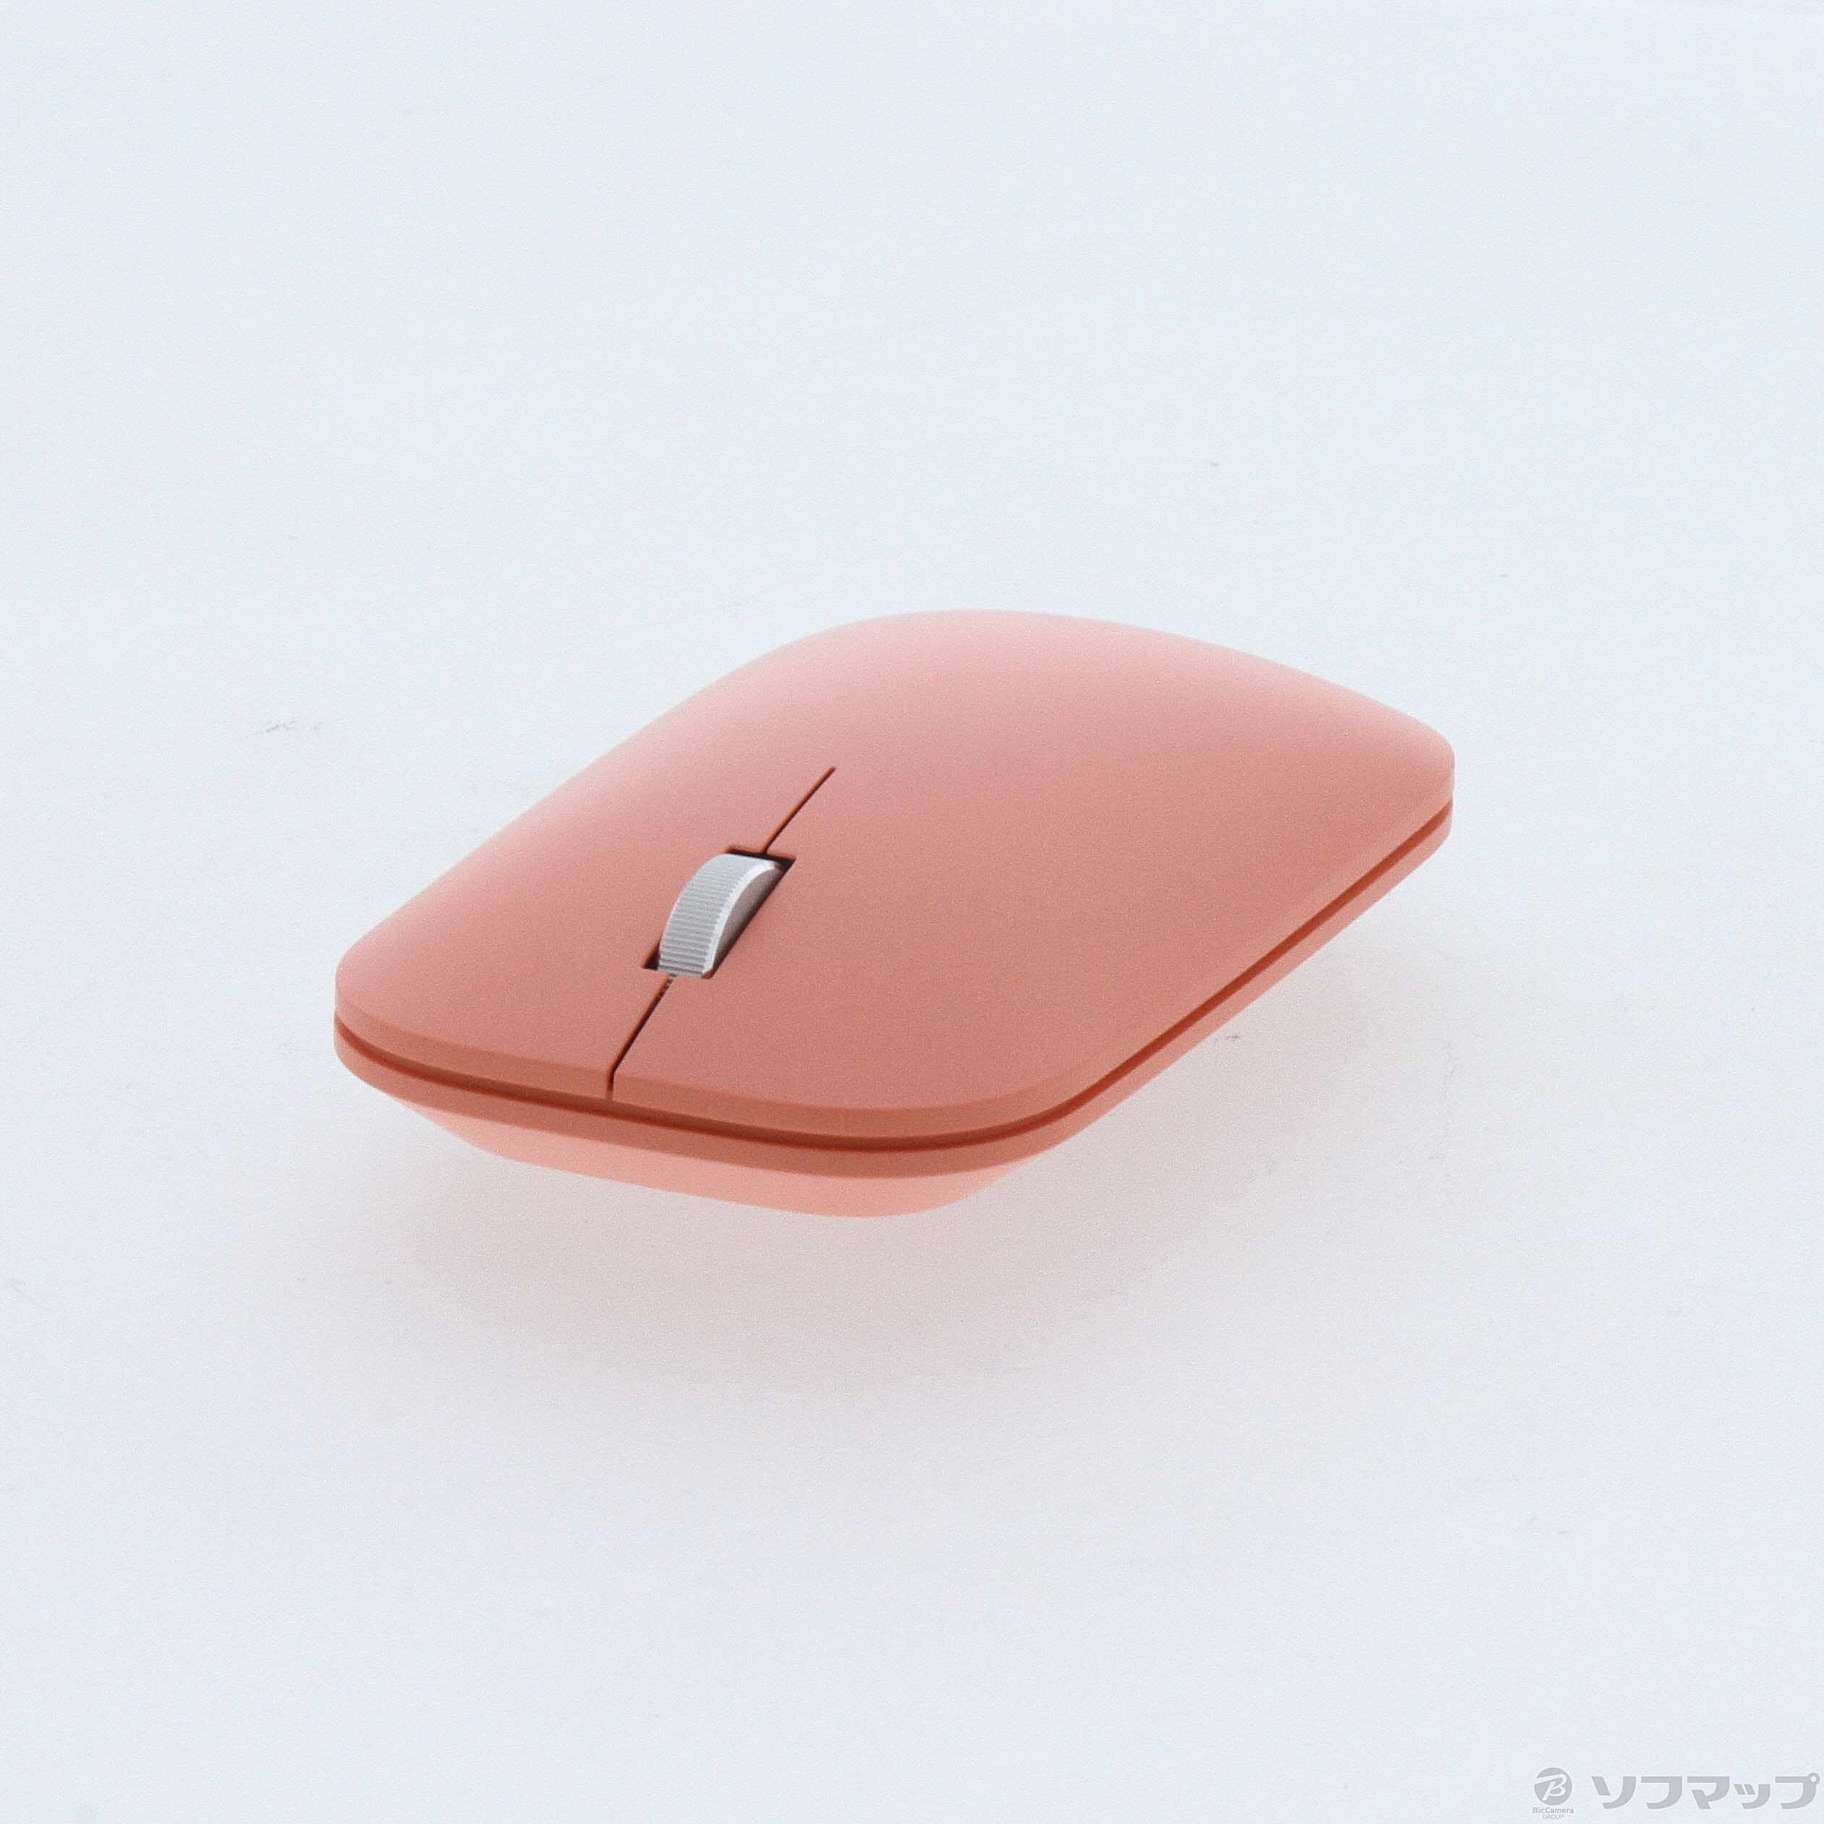 〔展示品〕 Microsoft Modern Mobile Mouse ピーチ KTF-00046